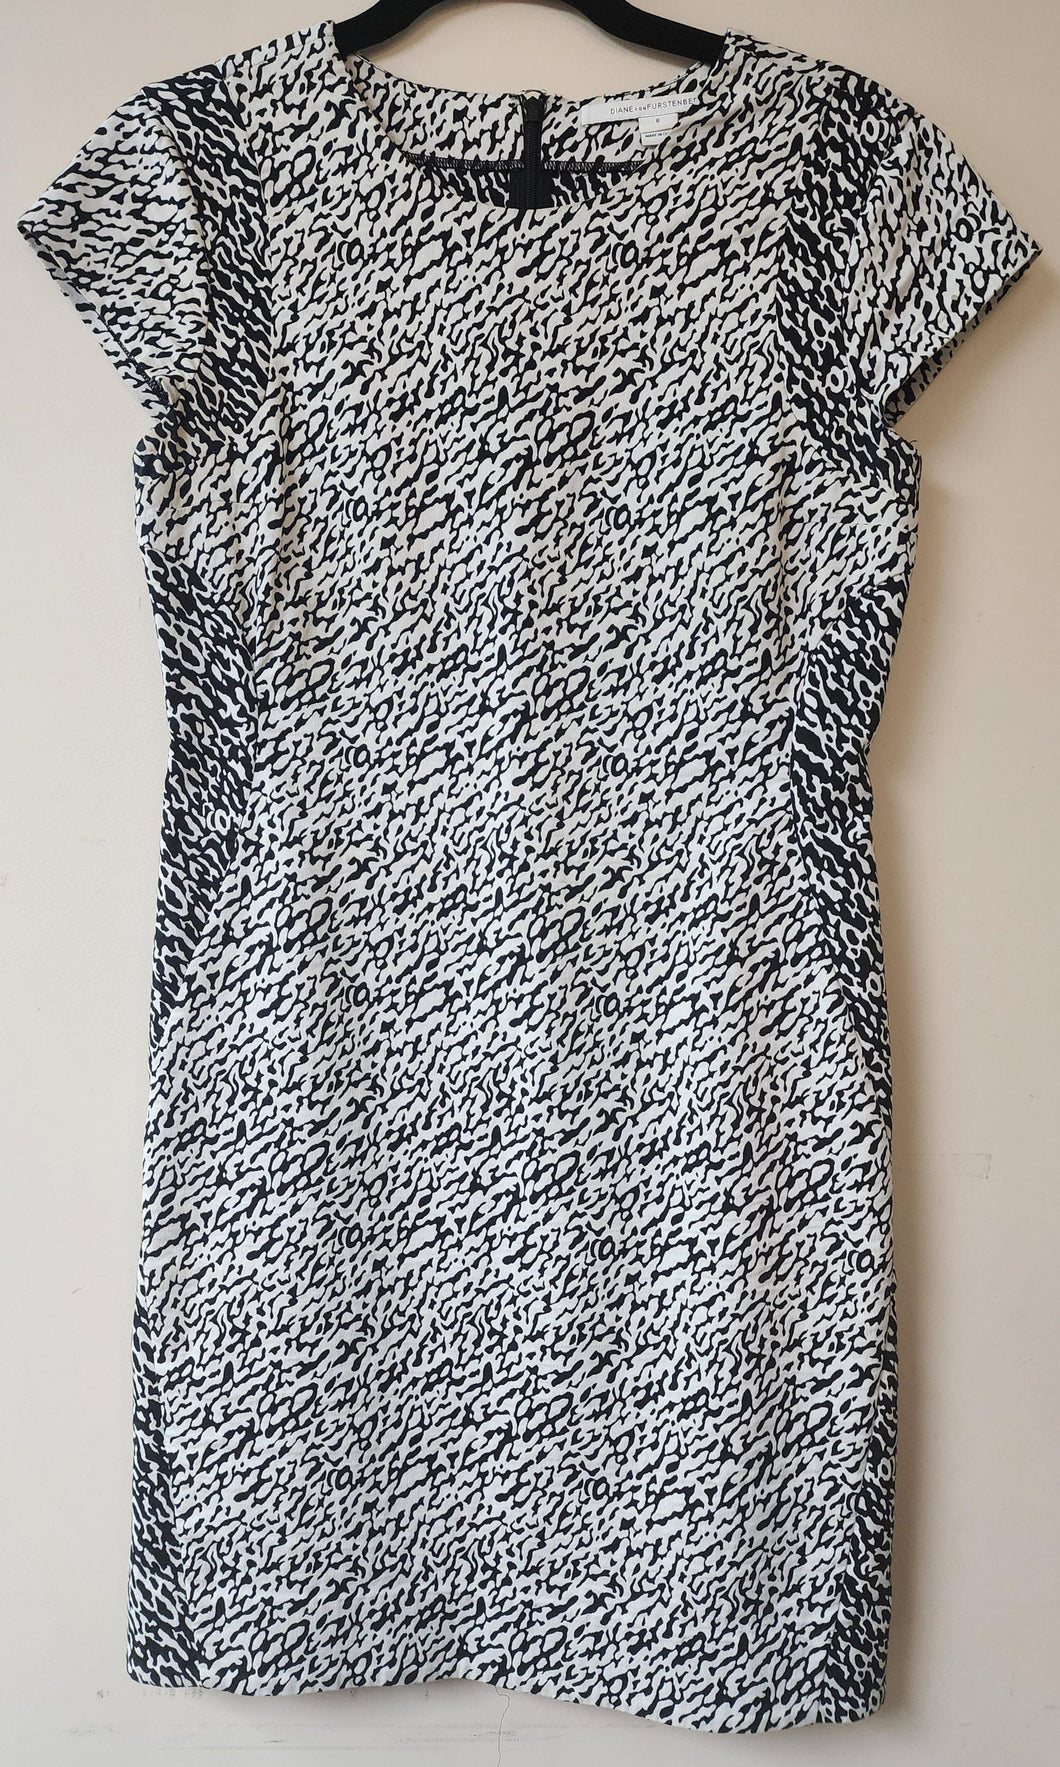 Diane Von Furstenberg Dress. Size 6